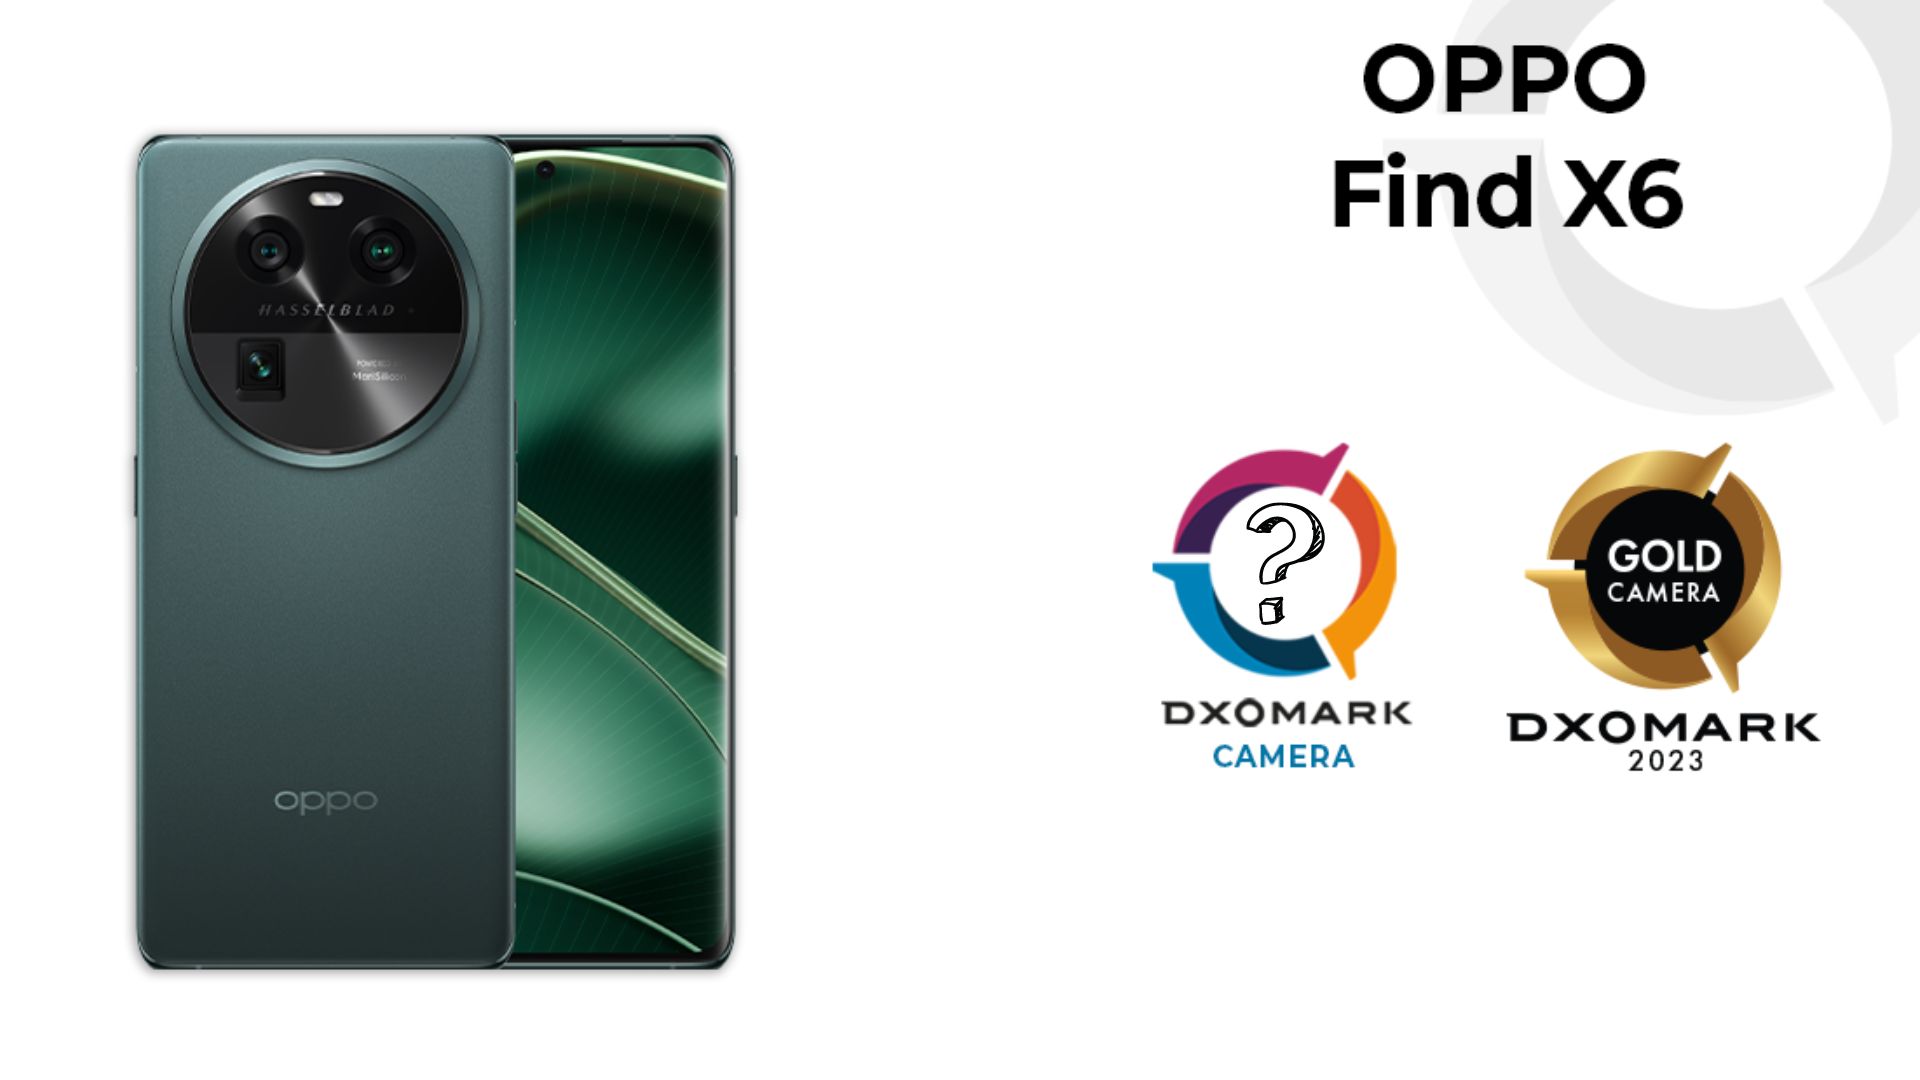 Oppo Find X6 - DXOMARK